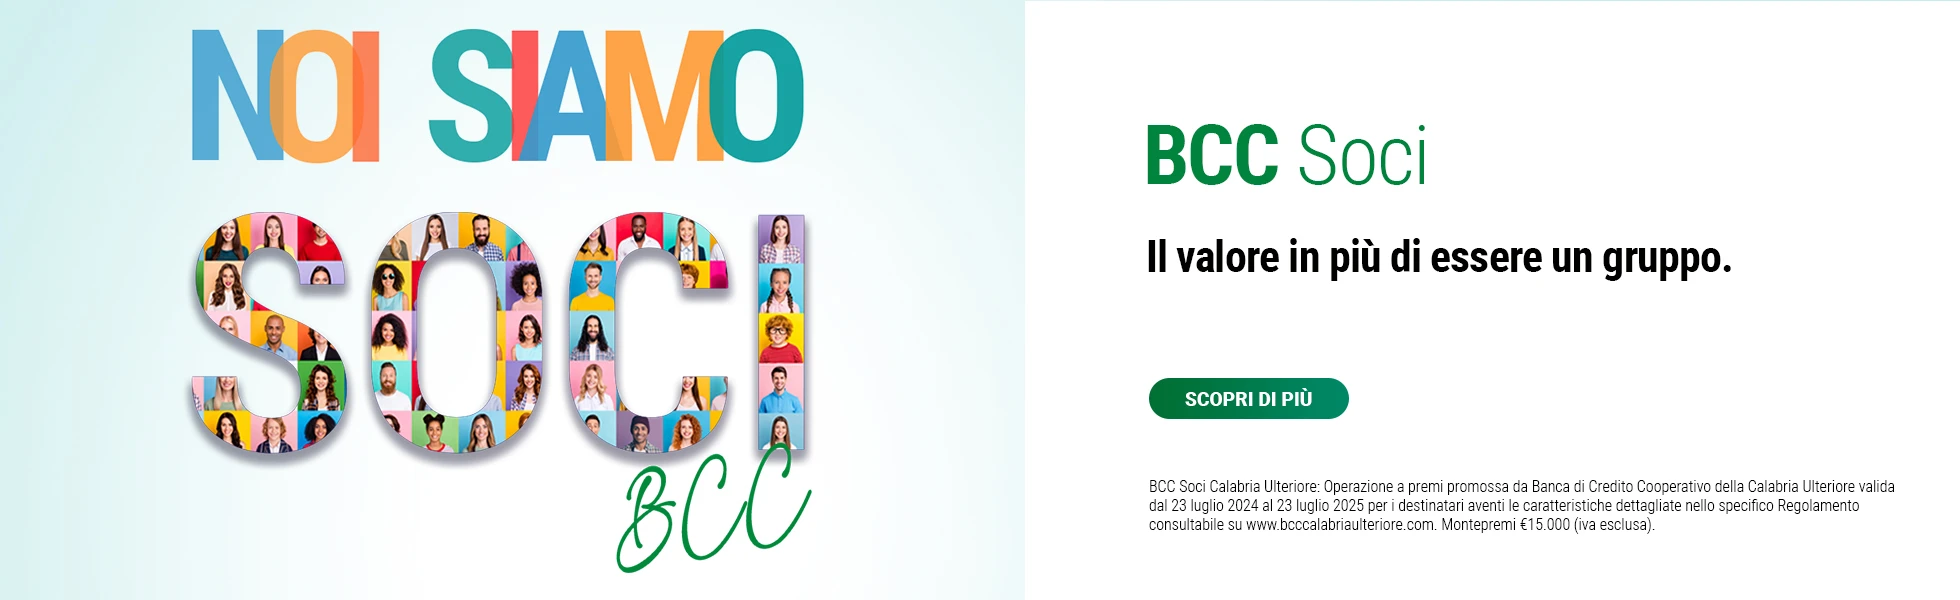 BCC Soci